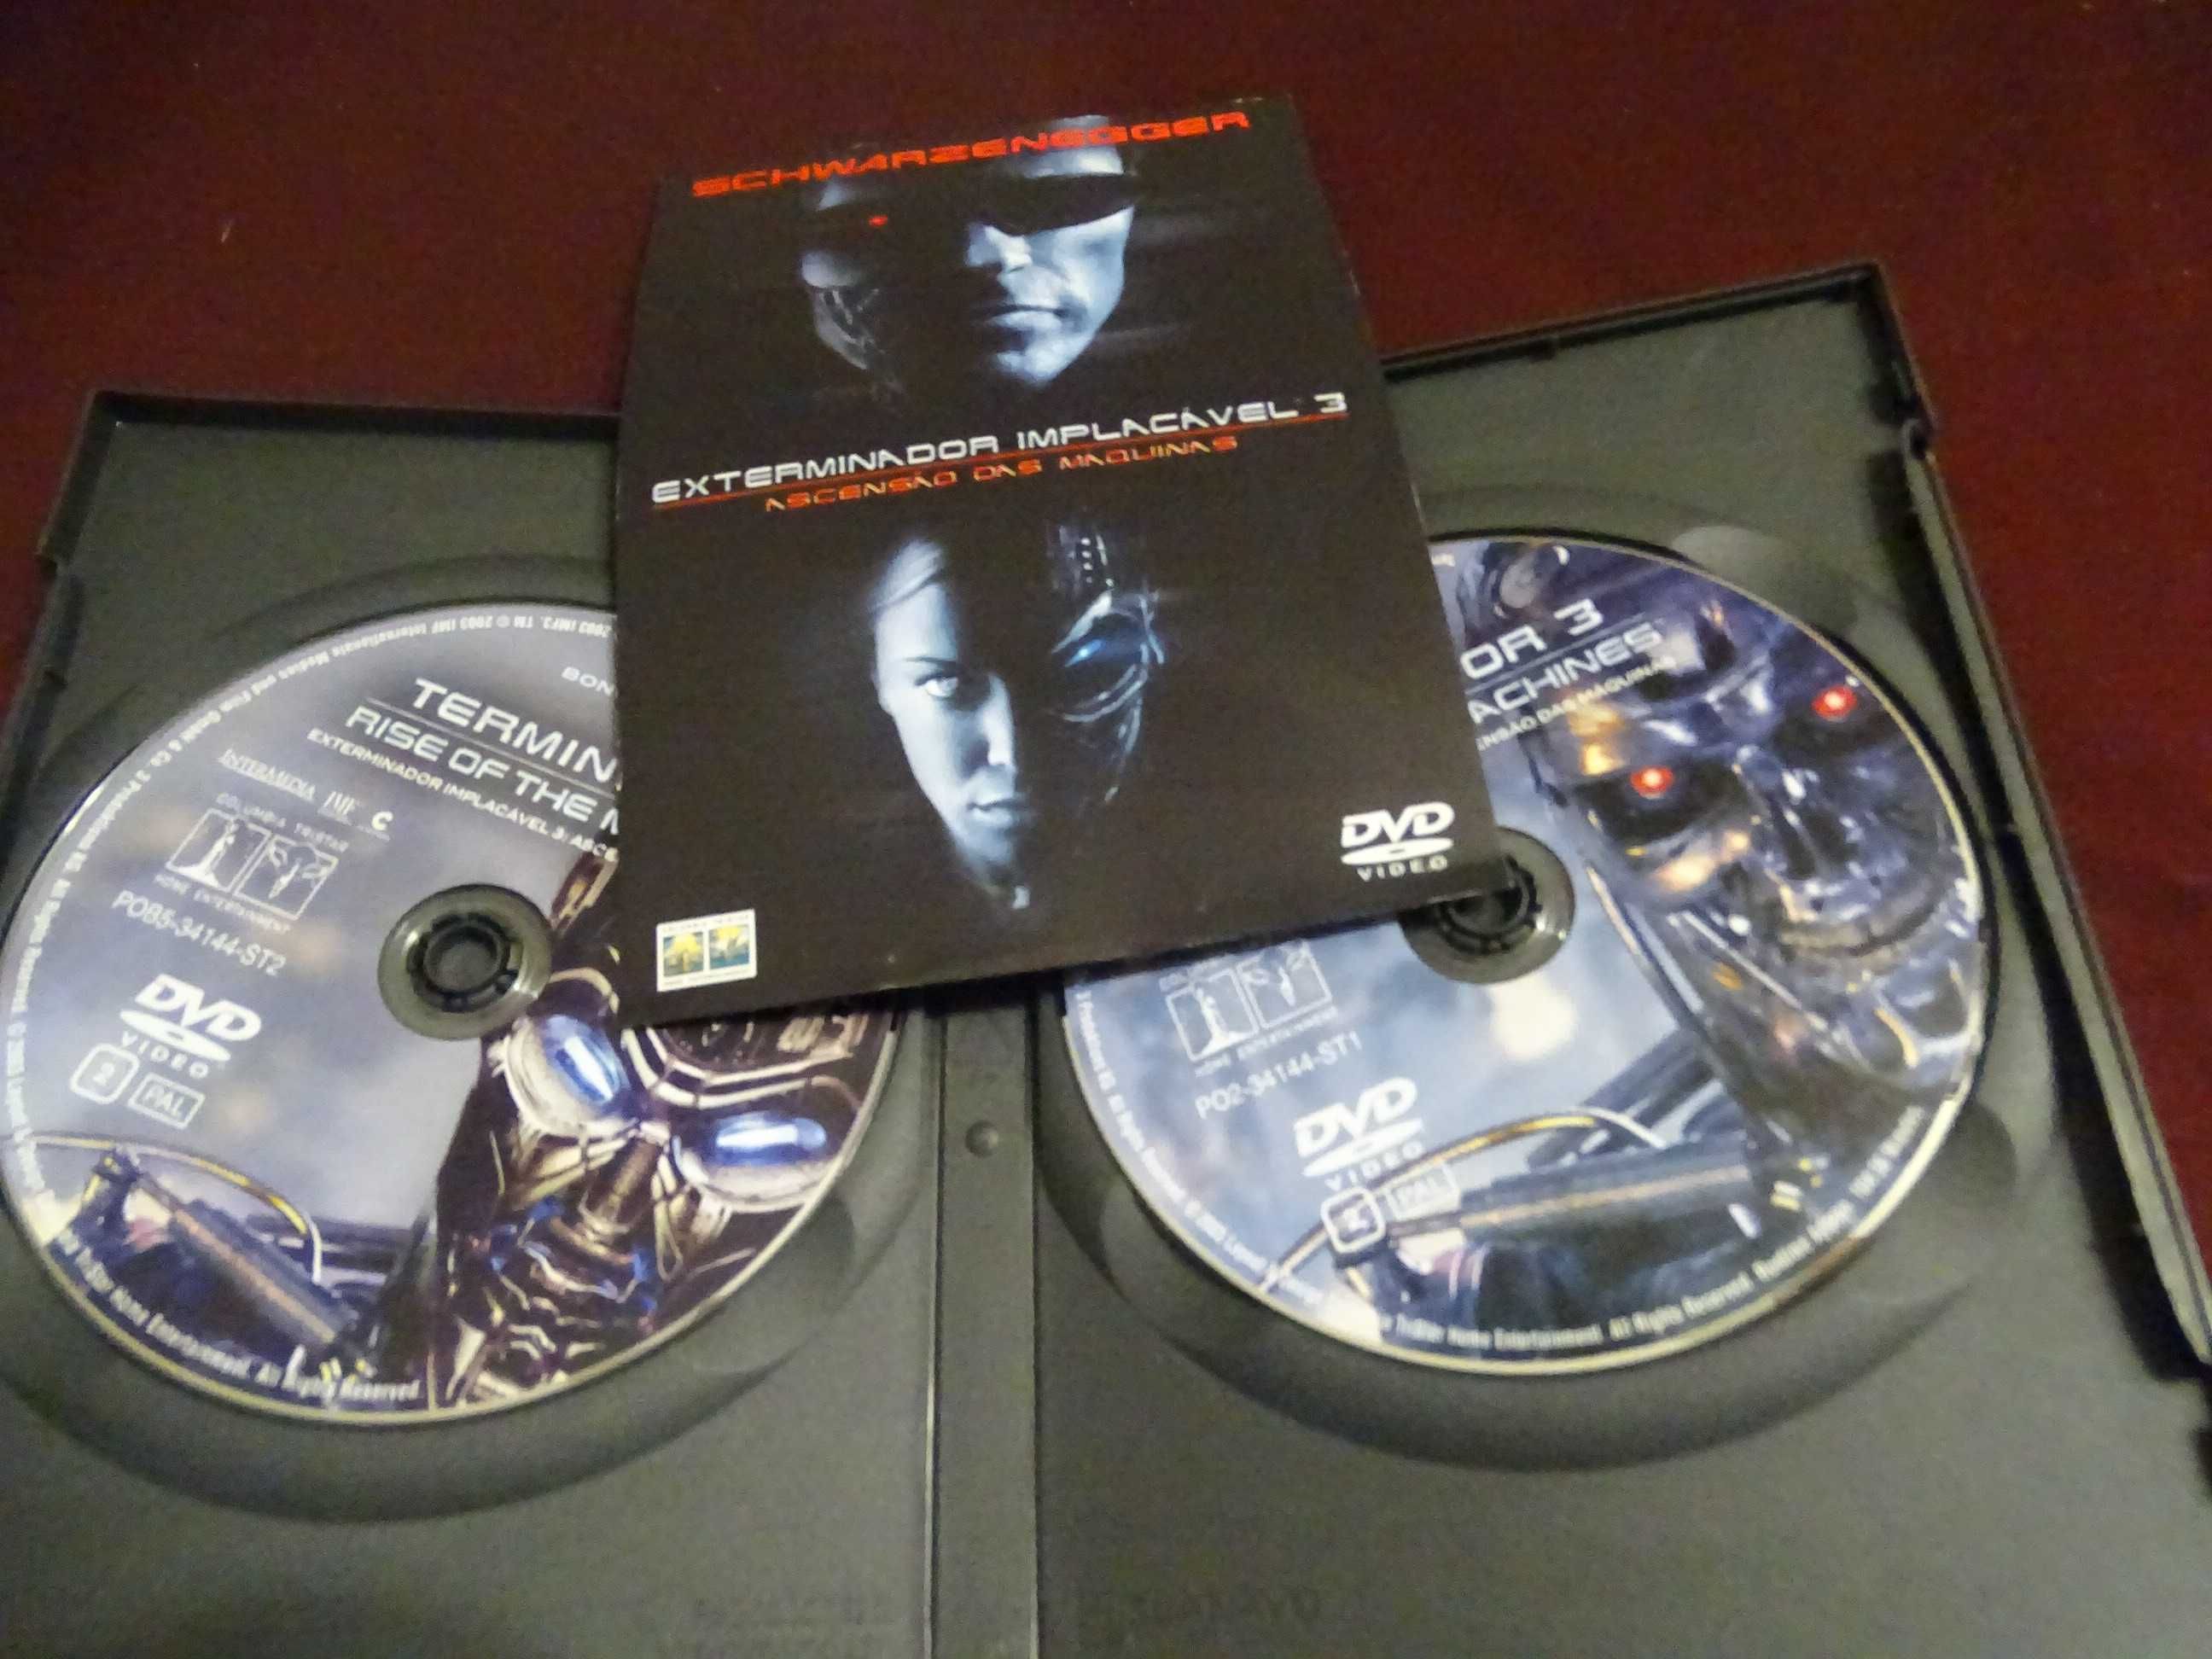 DVD-Exterminador implacável-Schwarzenegger-Edição 2 discos